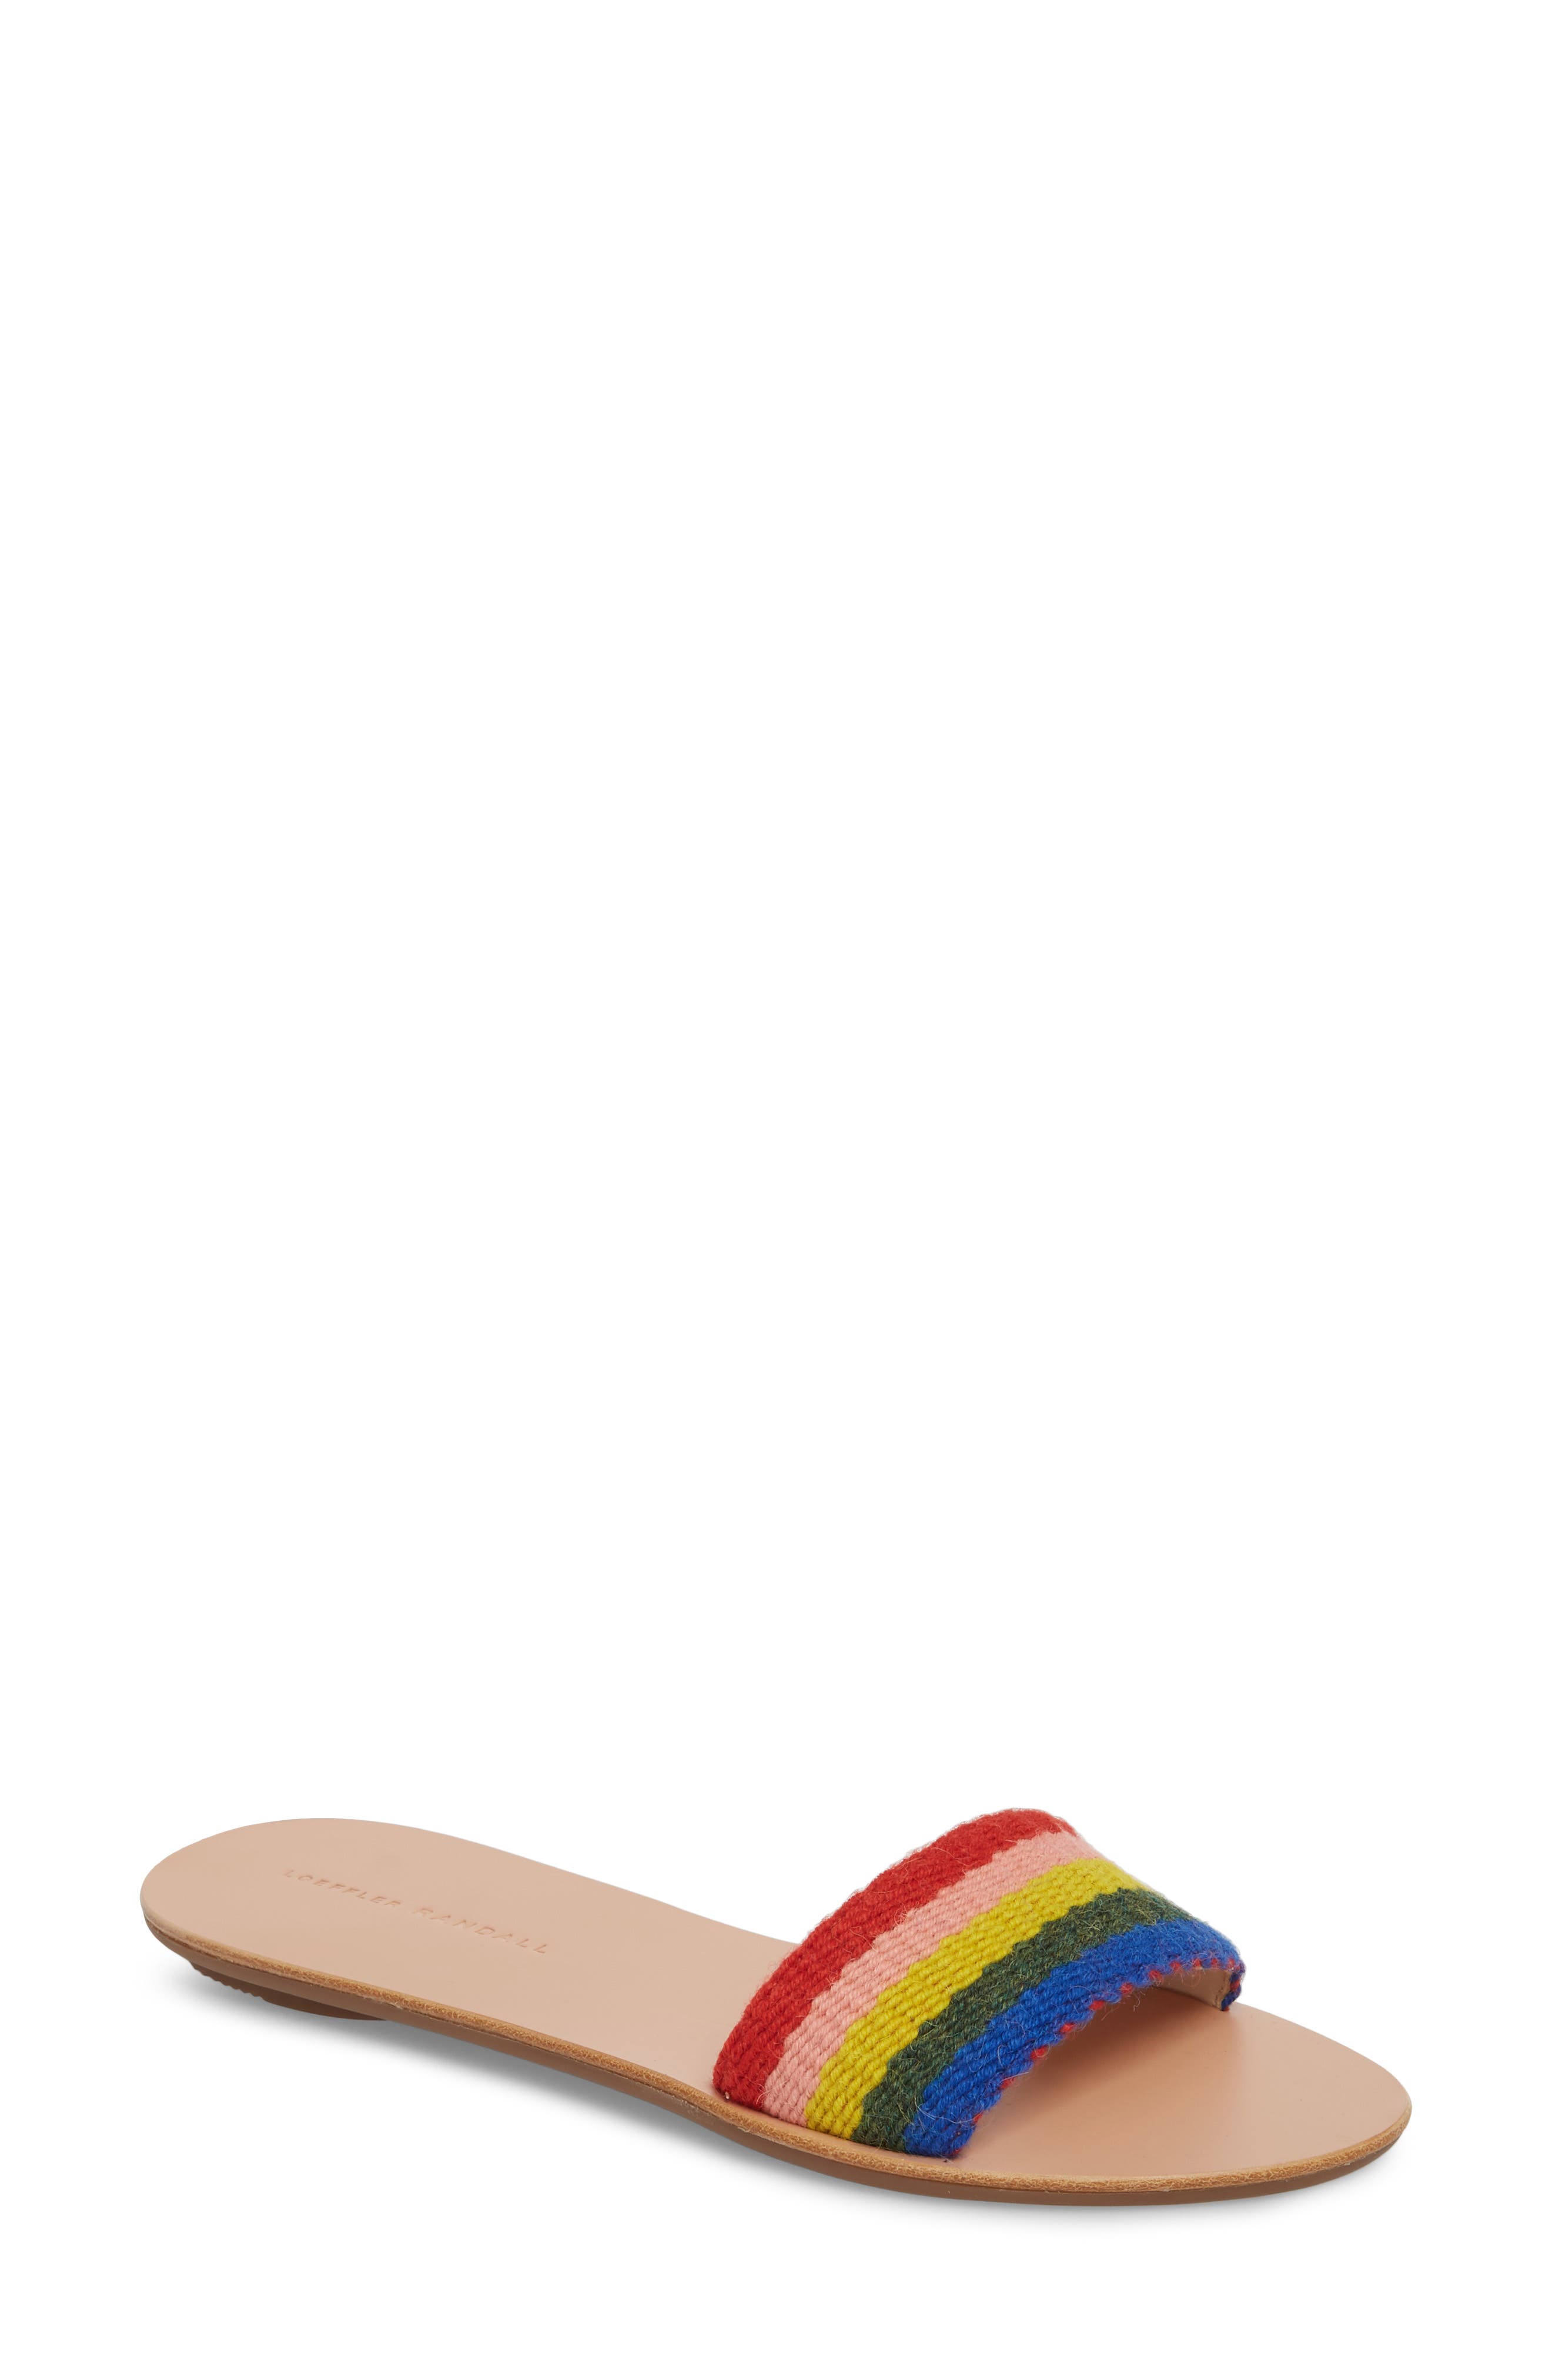 loeffler randall rainbow slides